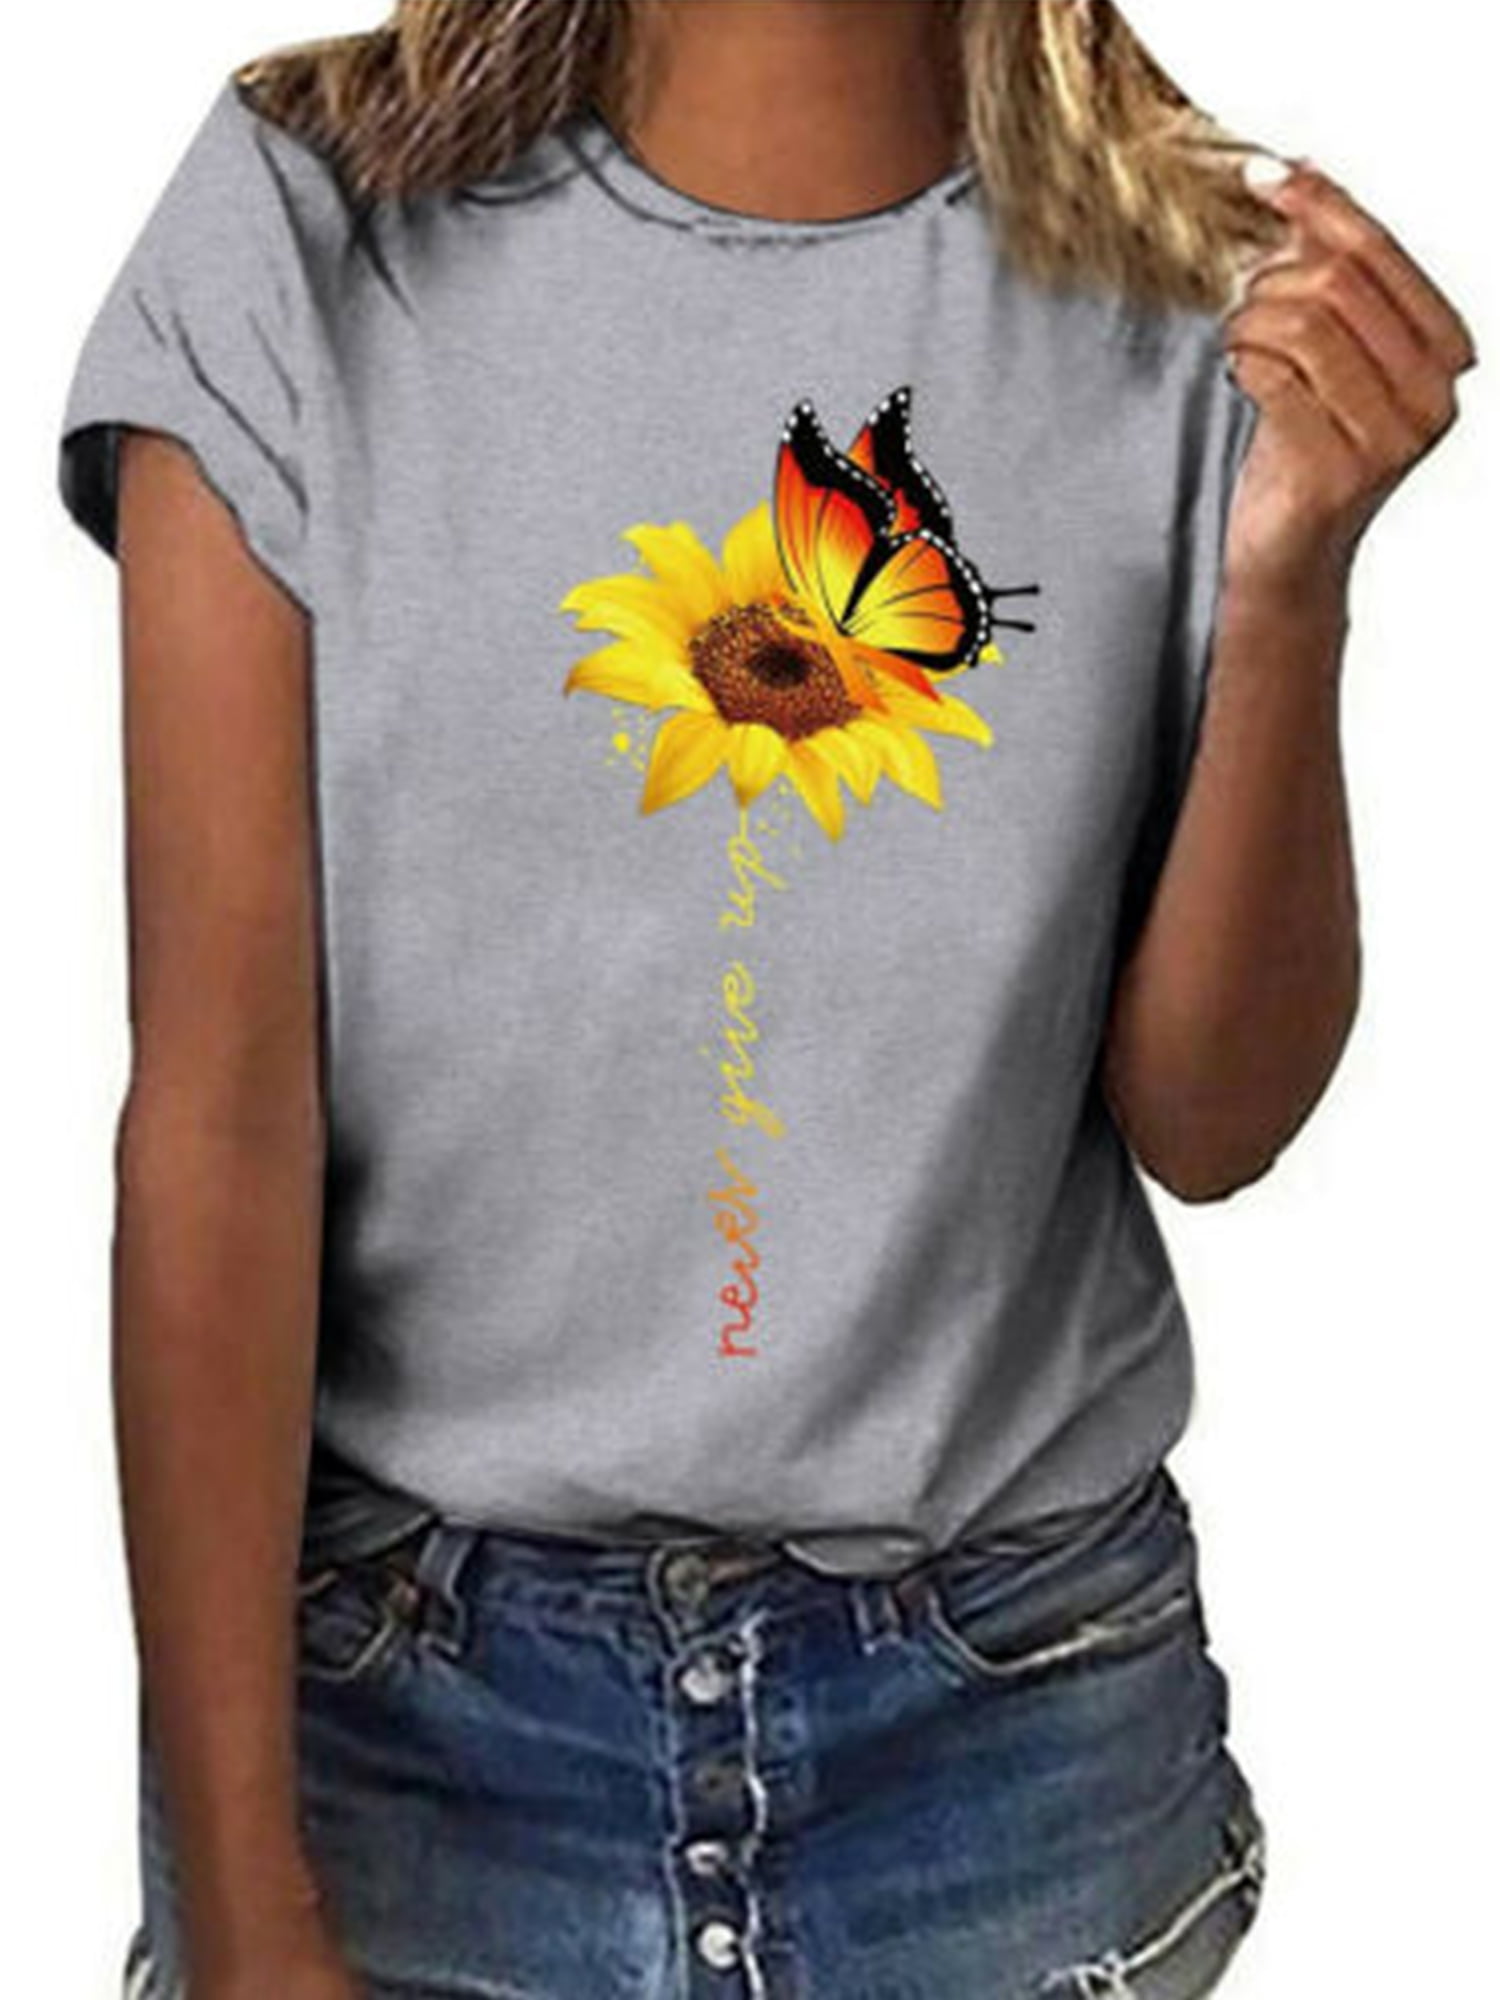 S 3xl Women A Little Sunflower T Shirt Bohemian Summer Short Sleeve T Shirt Ladies Tops Tee 